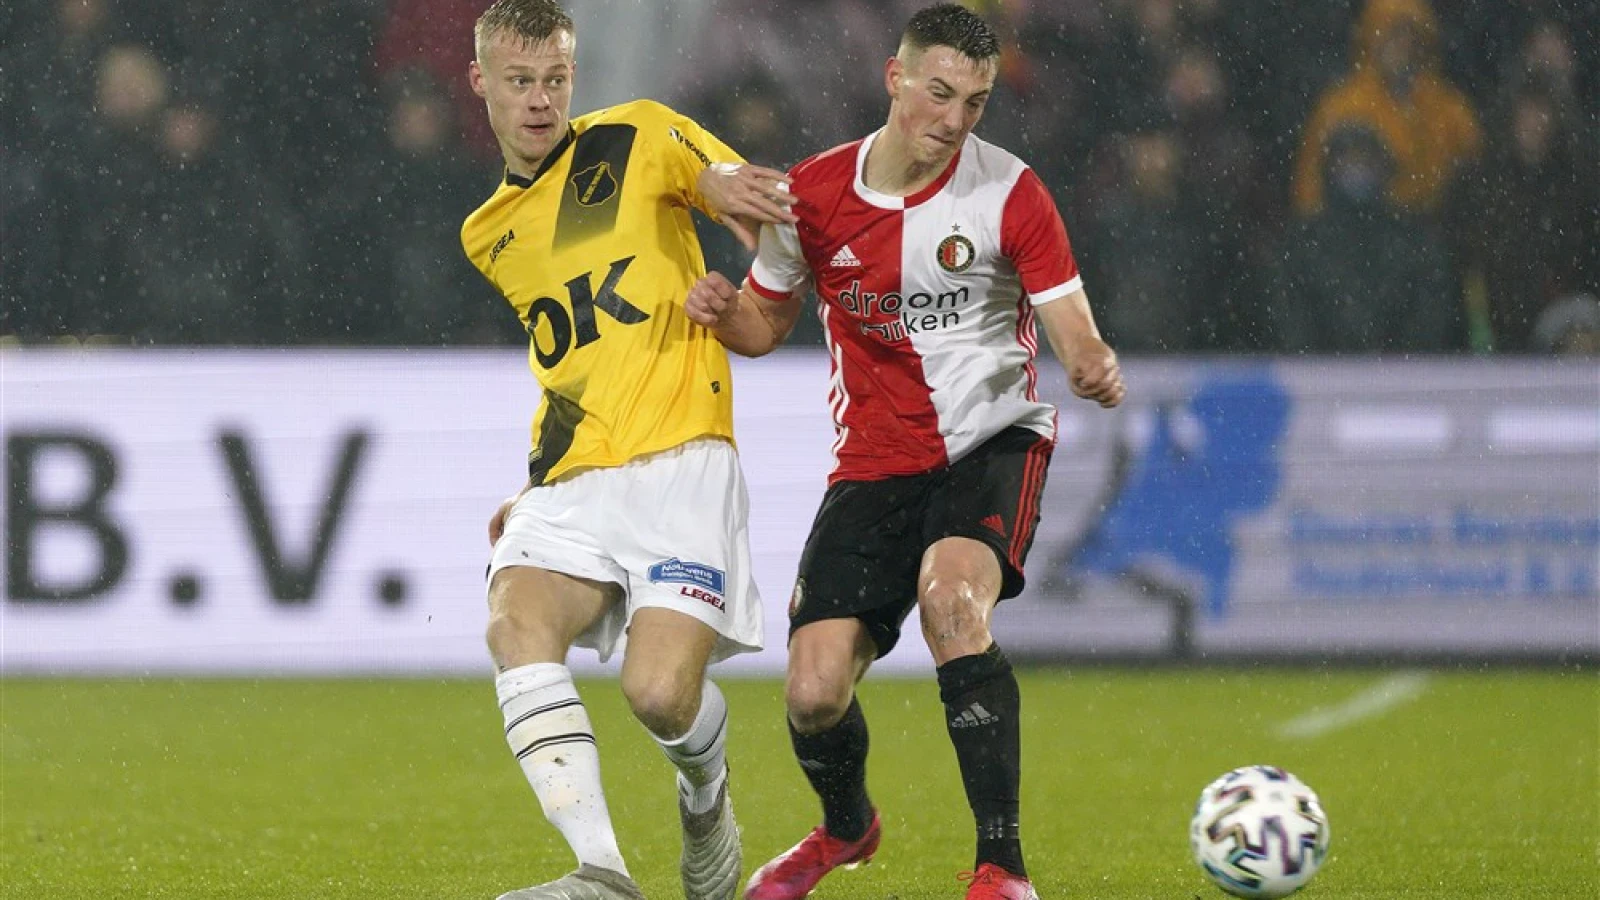 LIVE | Feyenoord - NAC Breda 7-1 | Einde wedstrijd